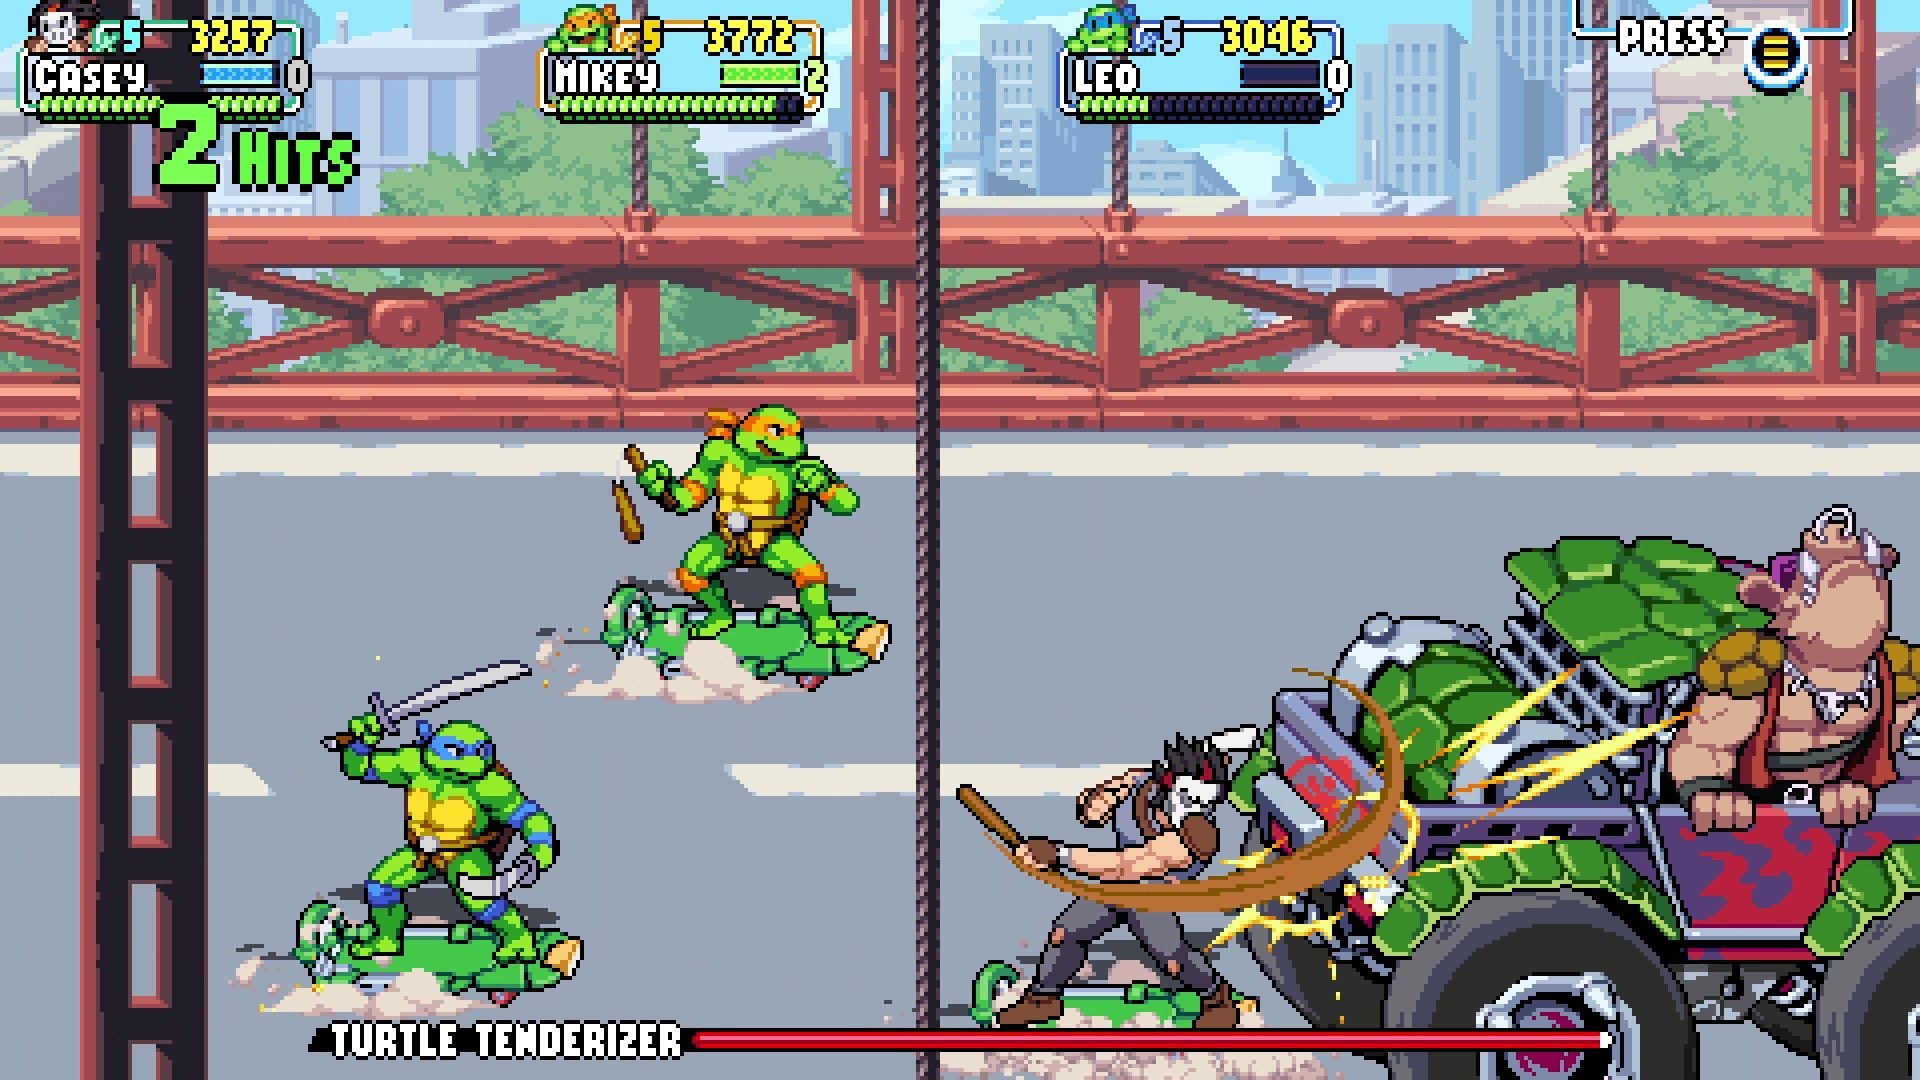 PS5 Teenage Mutant Ninja Turtles: Shredder's Revenge